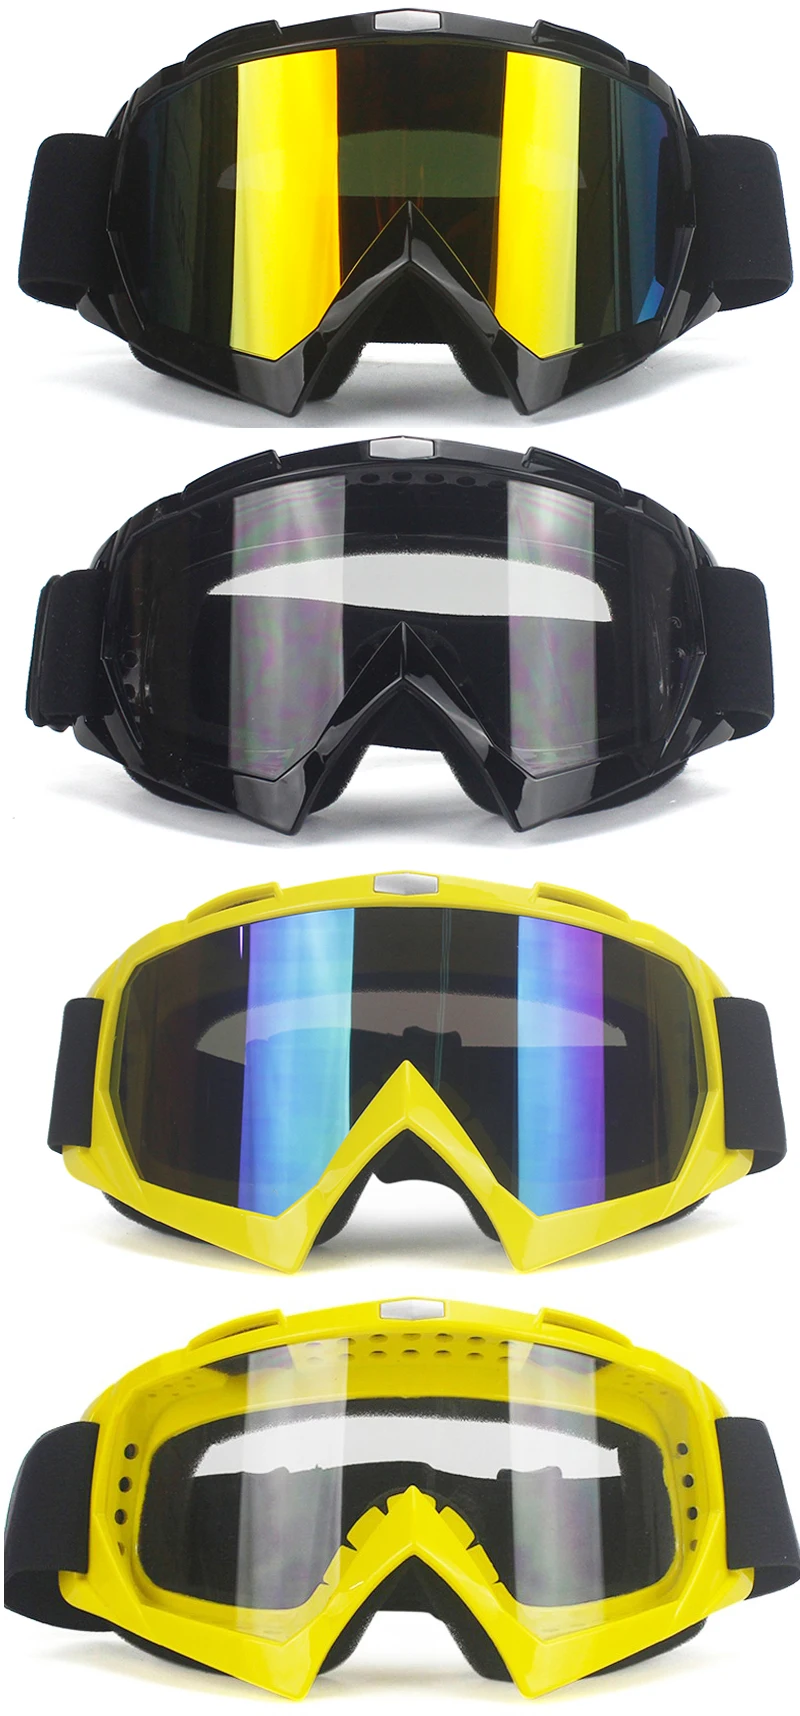 Высокое качество лыжные очки Спортивные Гонки внедорожные очки для мотокросса очки для шлема гонки Gafas Dirt Bike ATV MX goggles